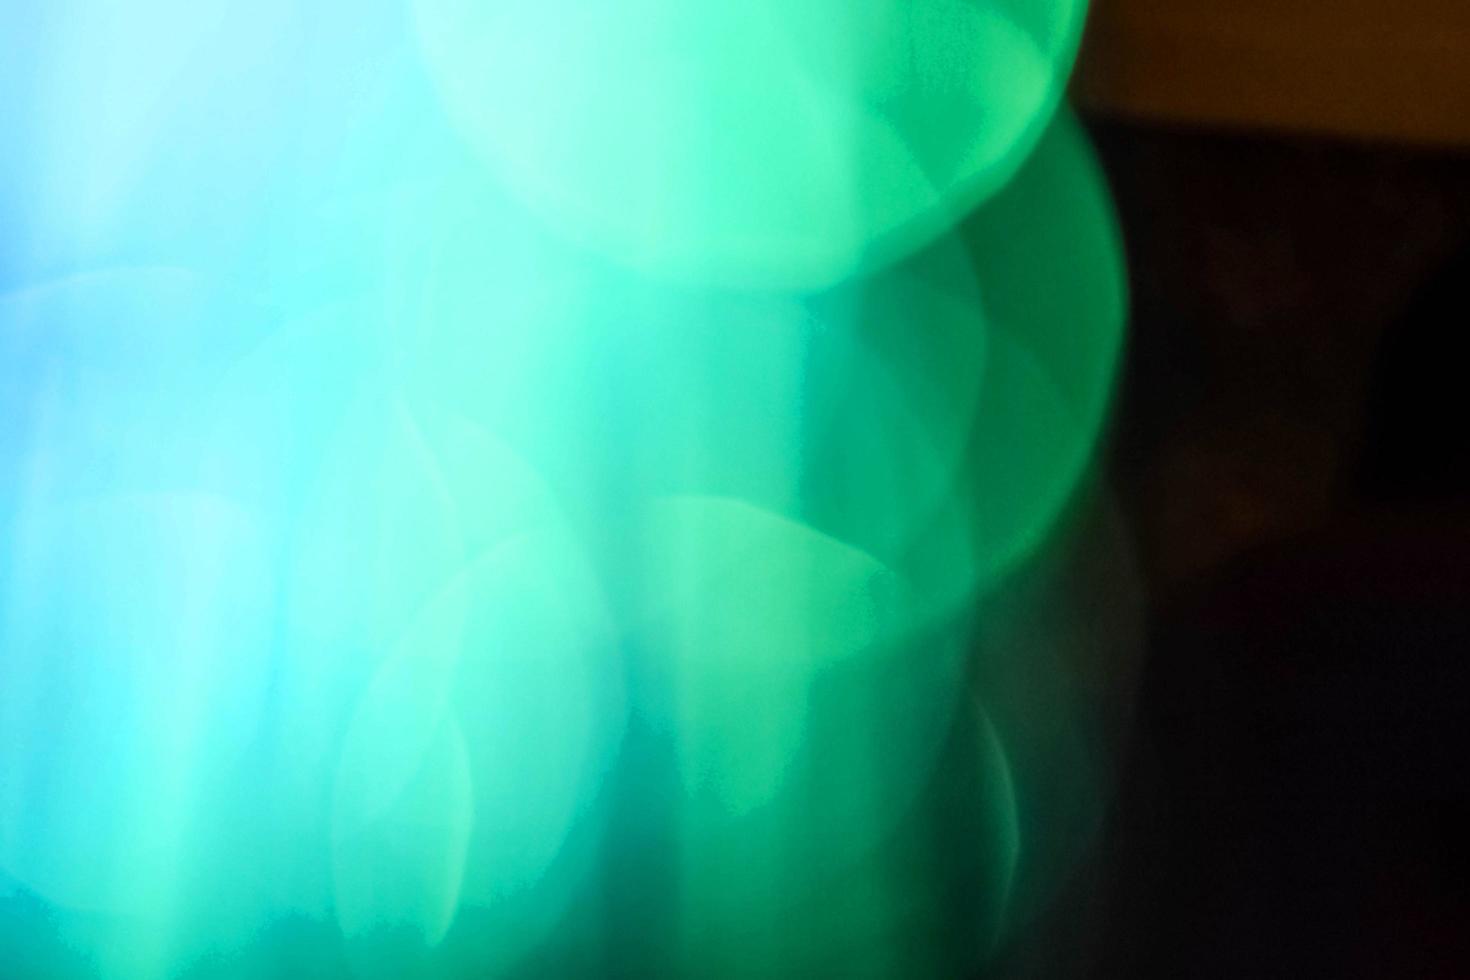 hellgrünes Neonlicht abstraktes Neon helles Lens Flare auf schwarzem Hintergrund gefärbt. dunkler abstrakter futuristischer Hintergrund und Neon foto